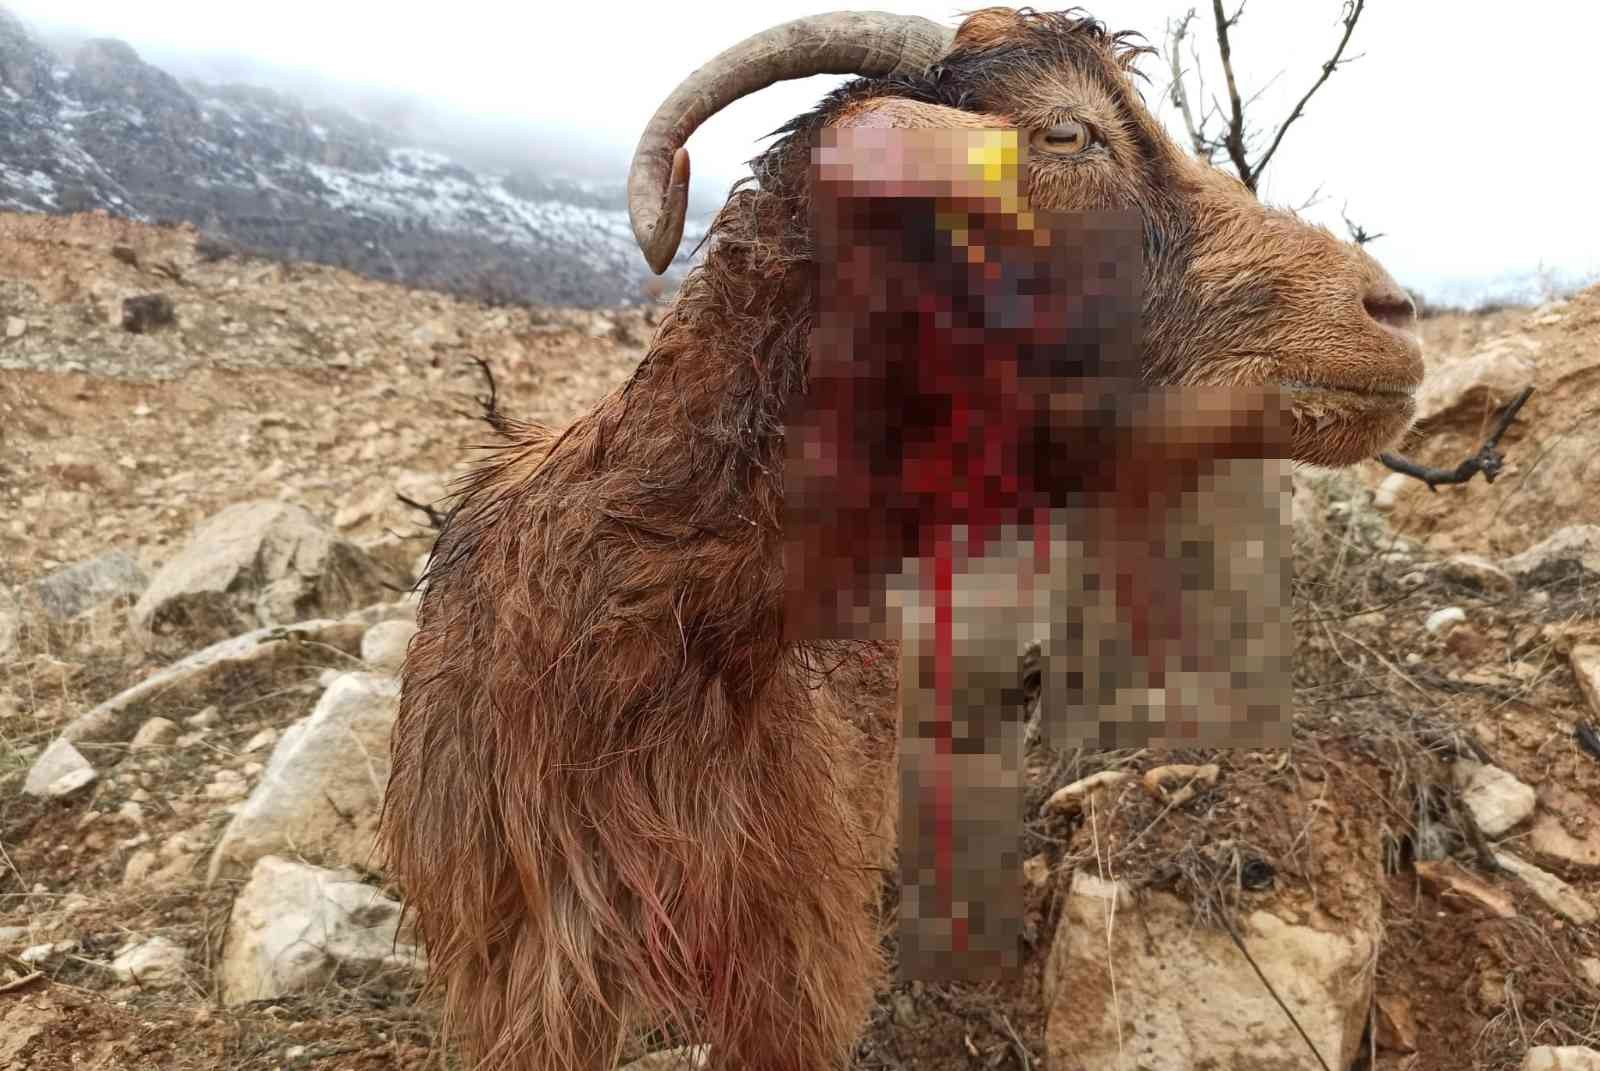 Siirt’te kurt sürüsü ahıra saldırdı: 3 keçi telef olurken, 5 keçi yaralandı